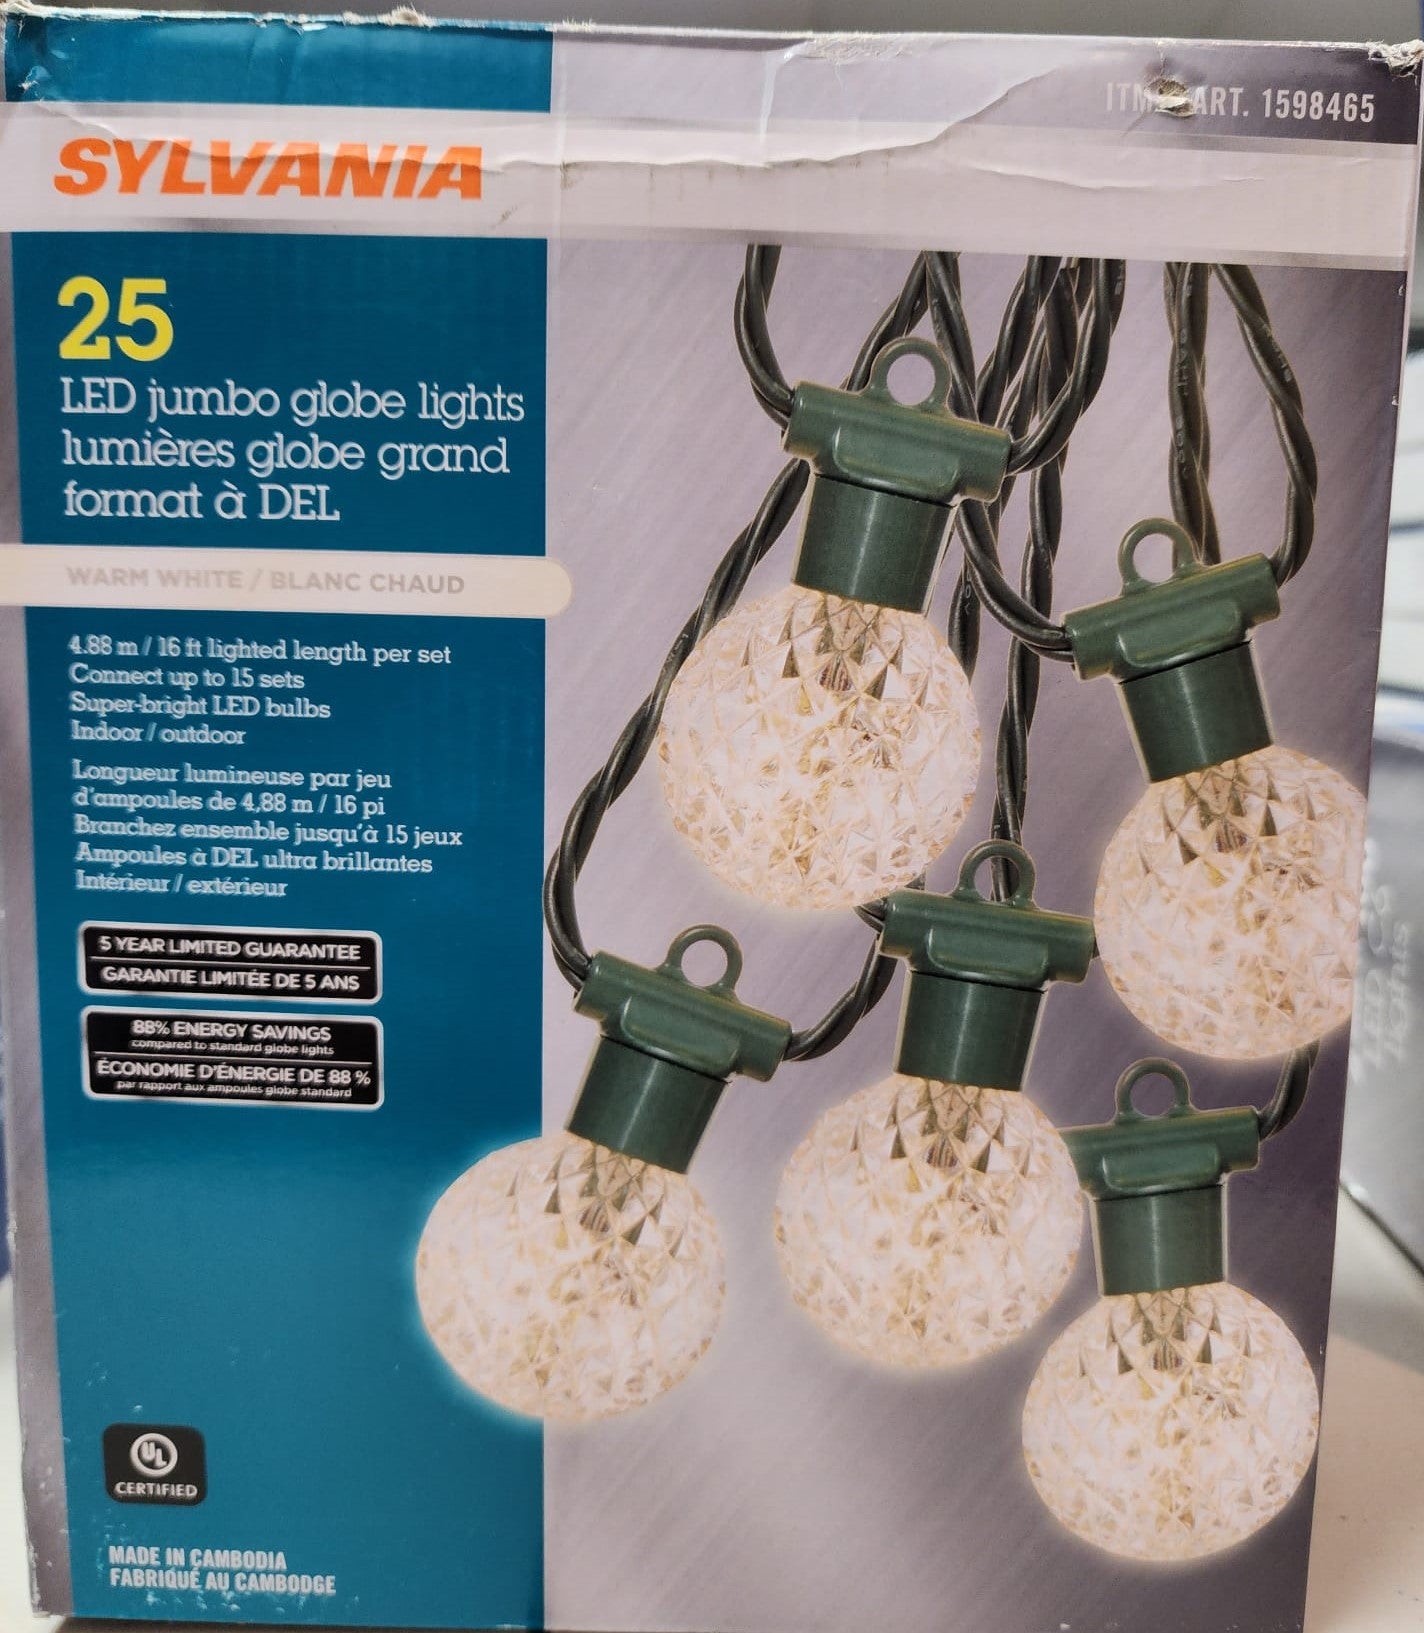 Sylvania Jumbo Globe LED Christmas Lights Item